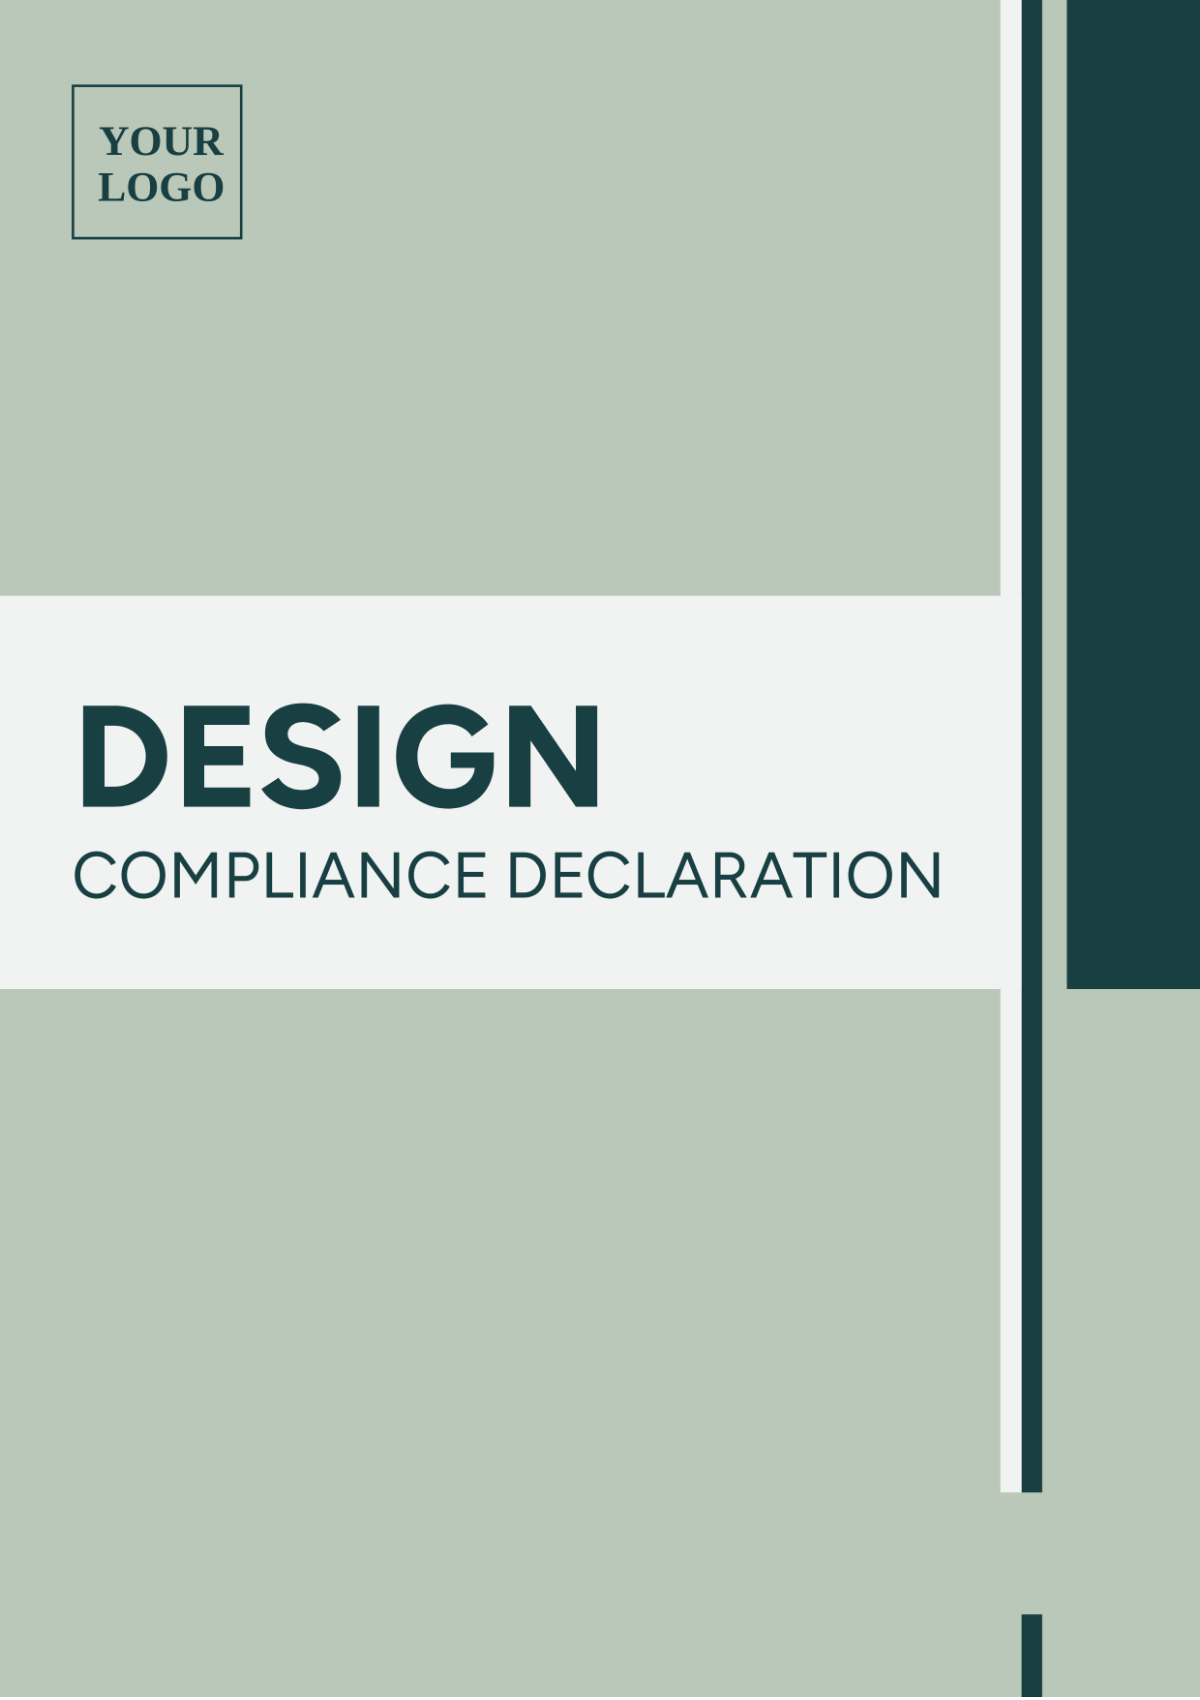 Free Design Compliance Declaration Template